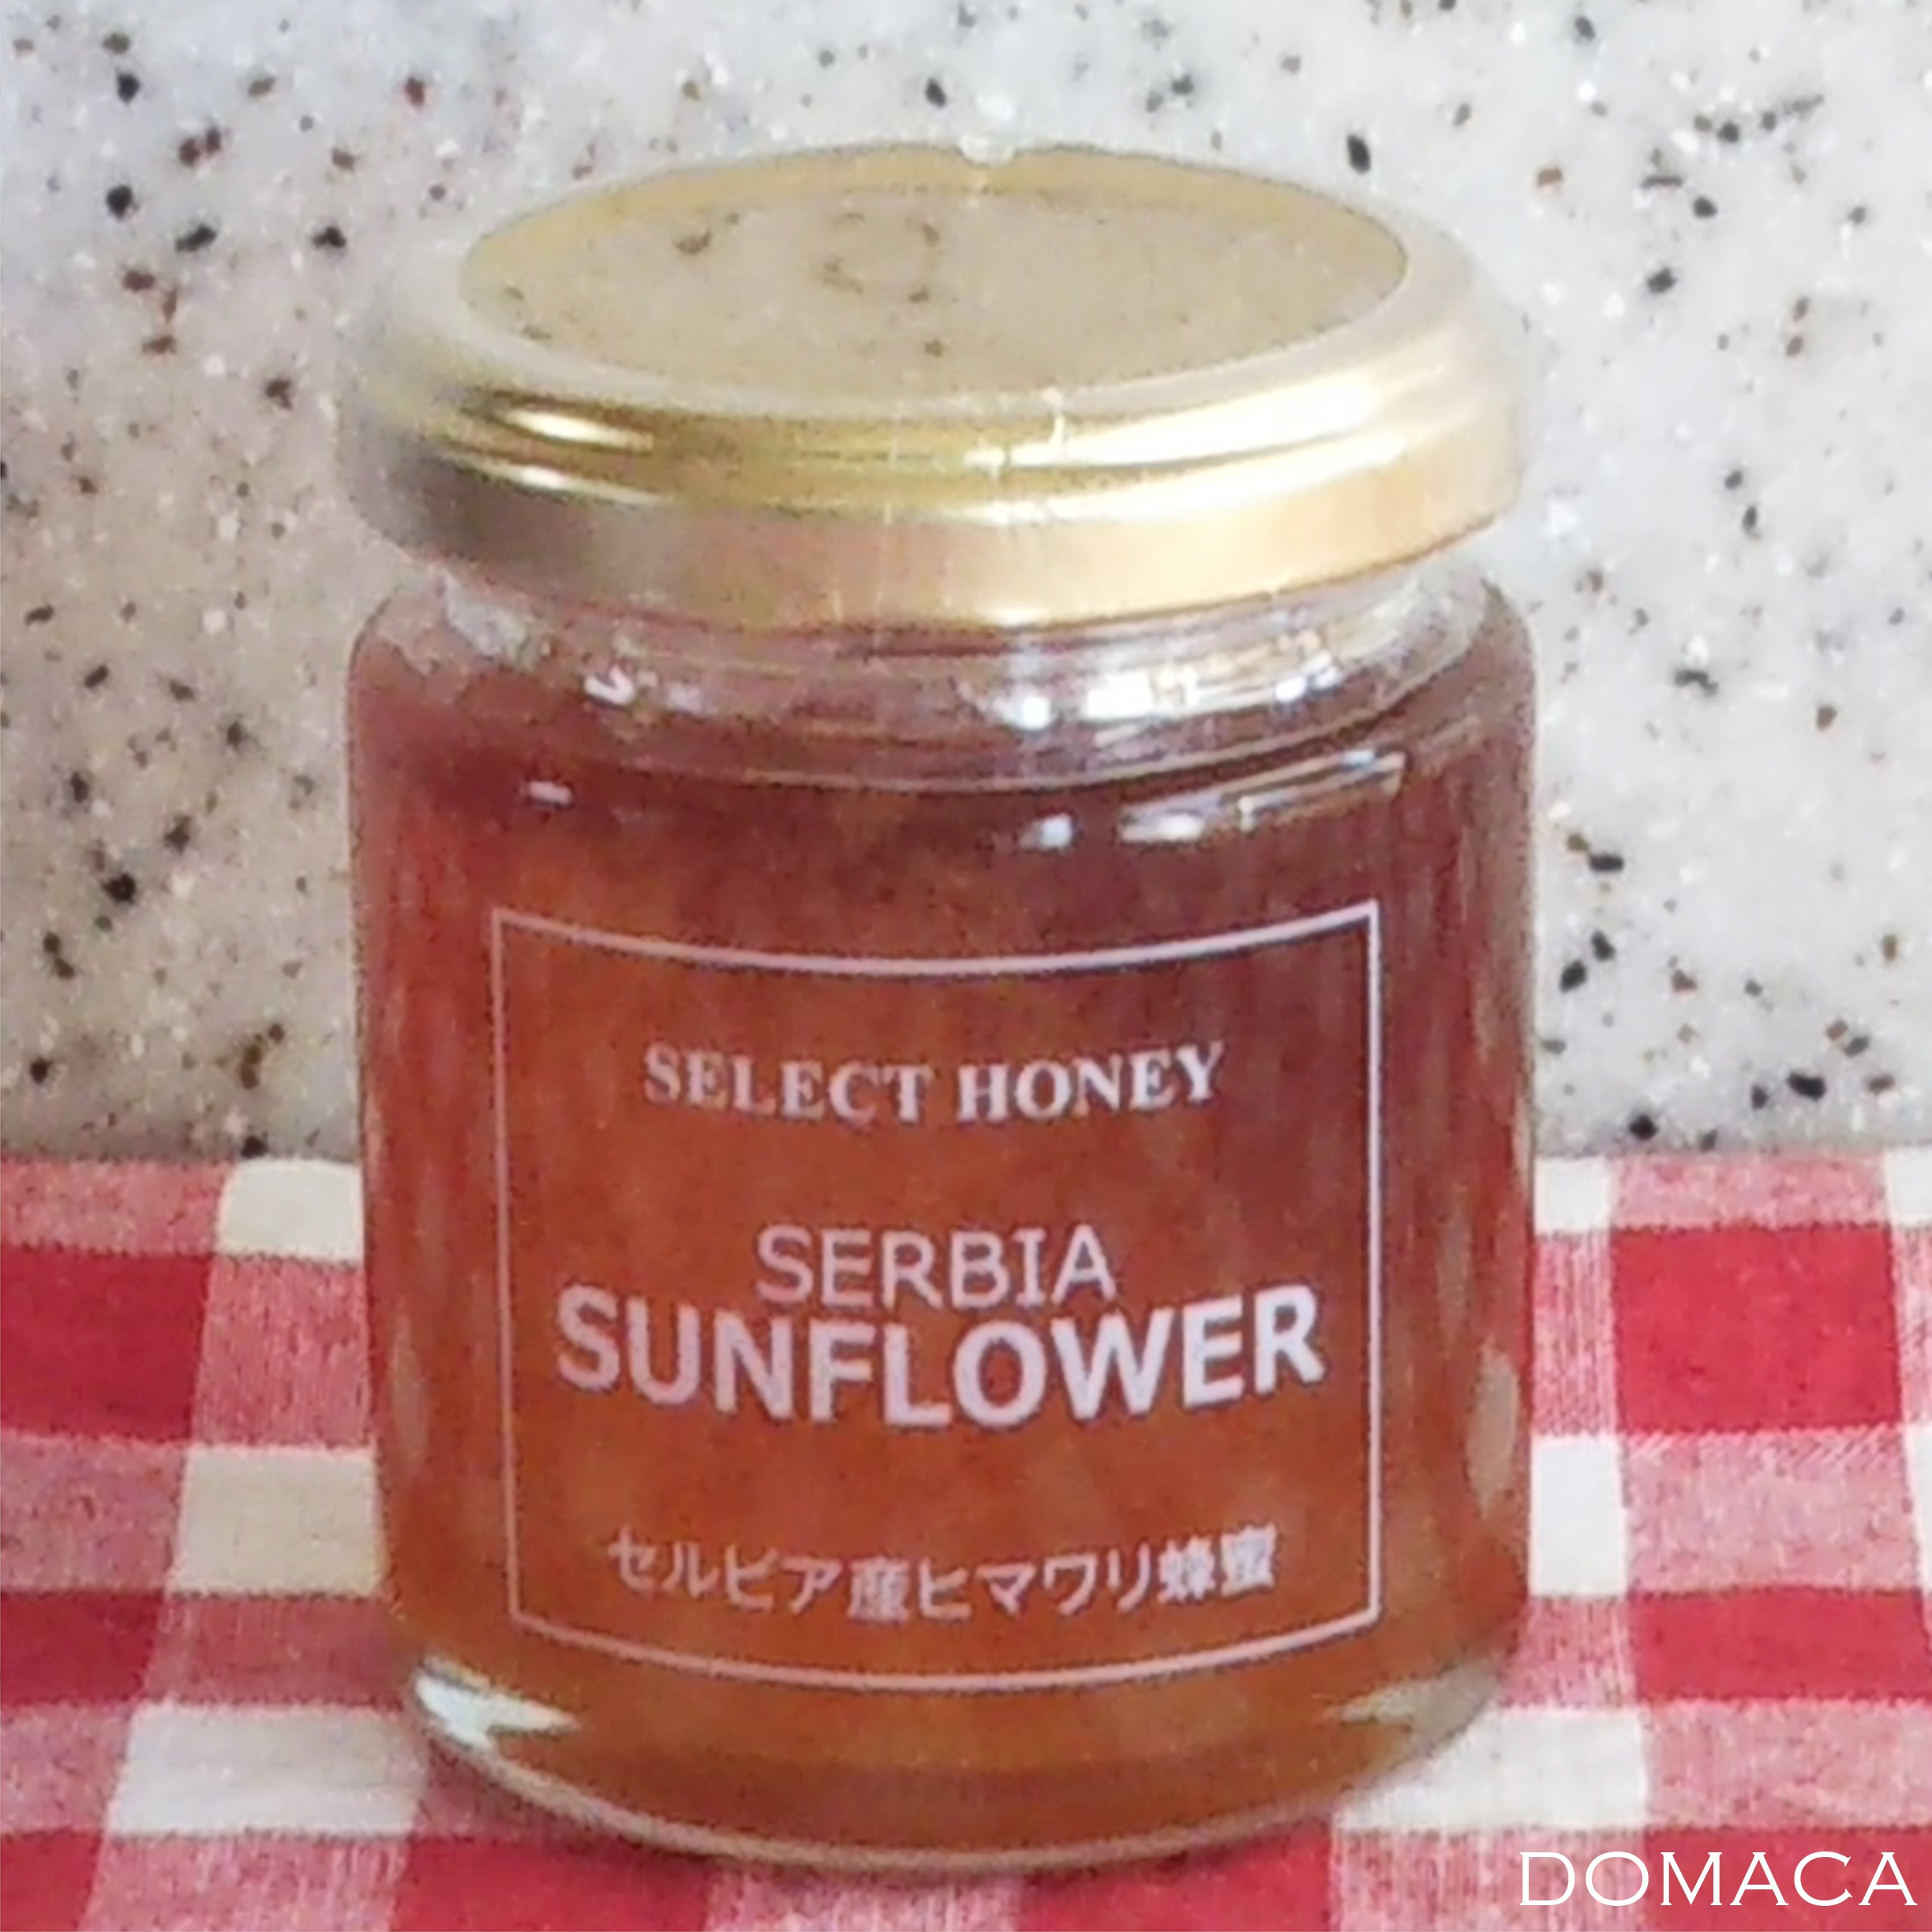 【web shop】セルビアのヒマワリ蜂蜜入荷のお知らせ